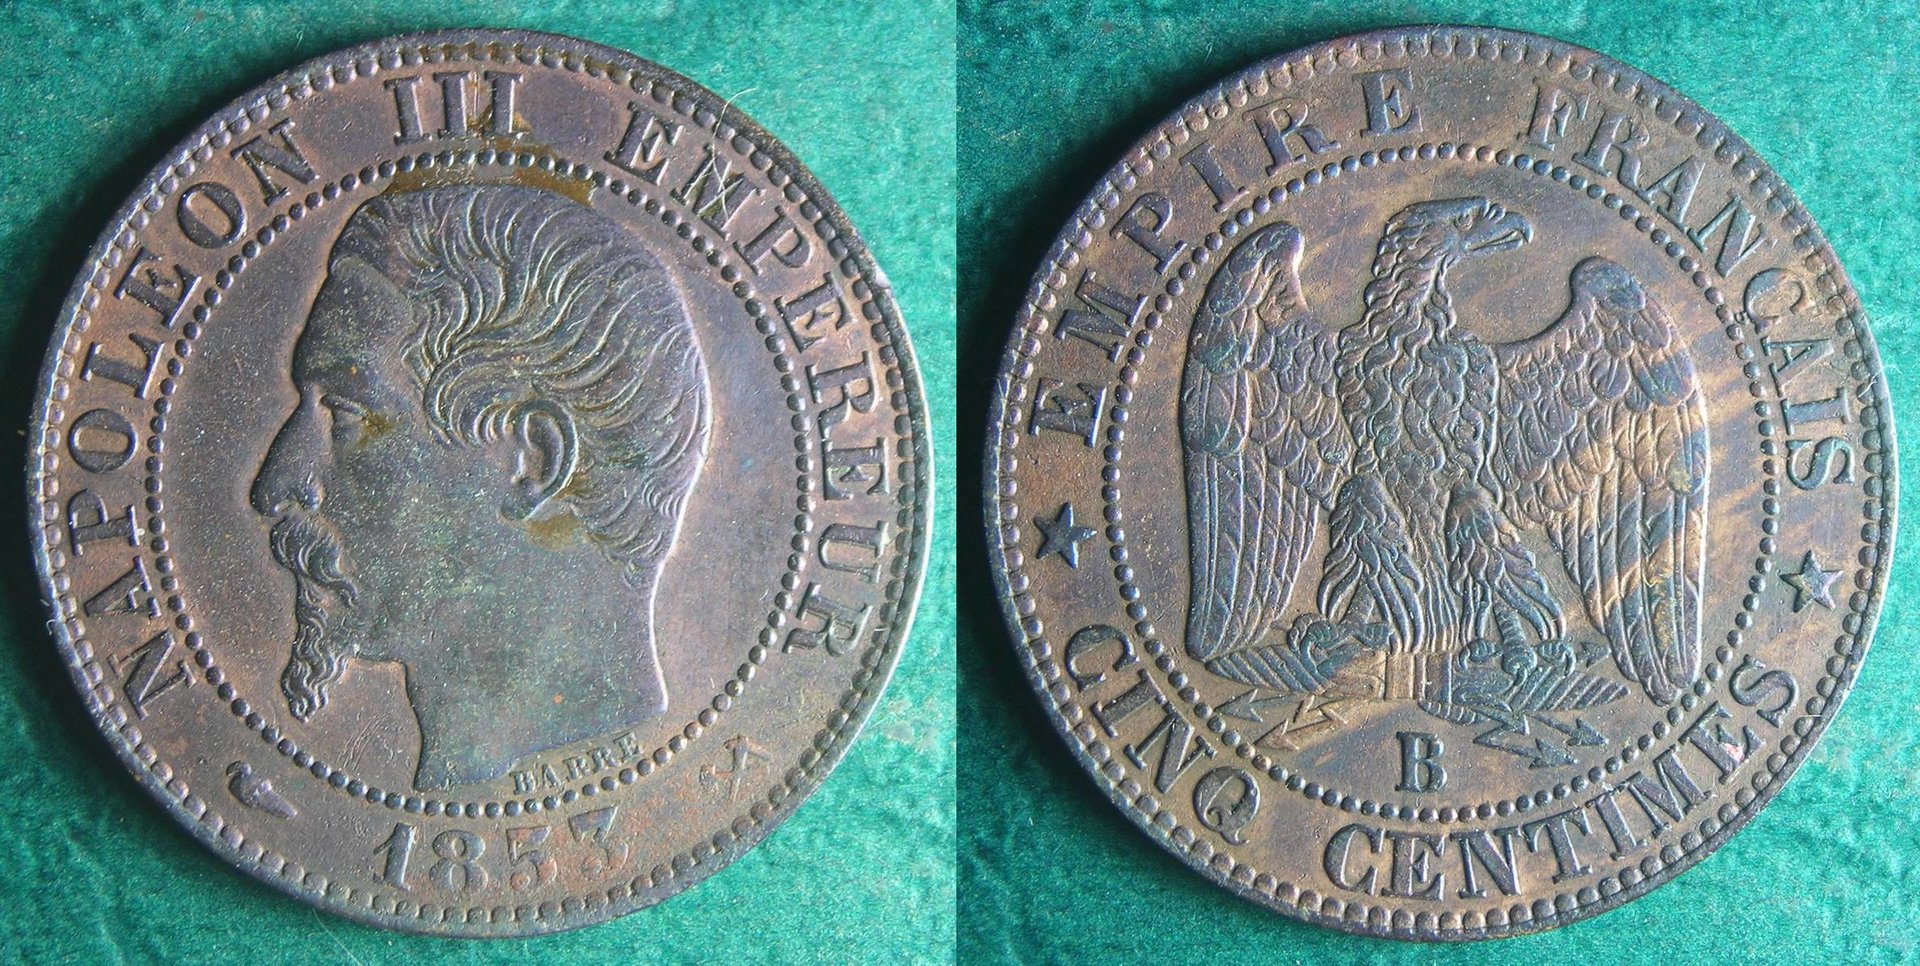 1853 FR-B 5 c.jpg